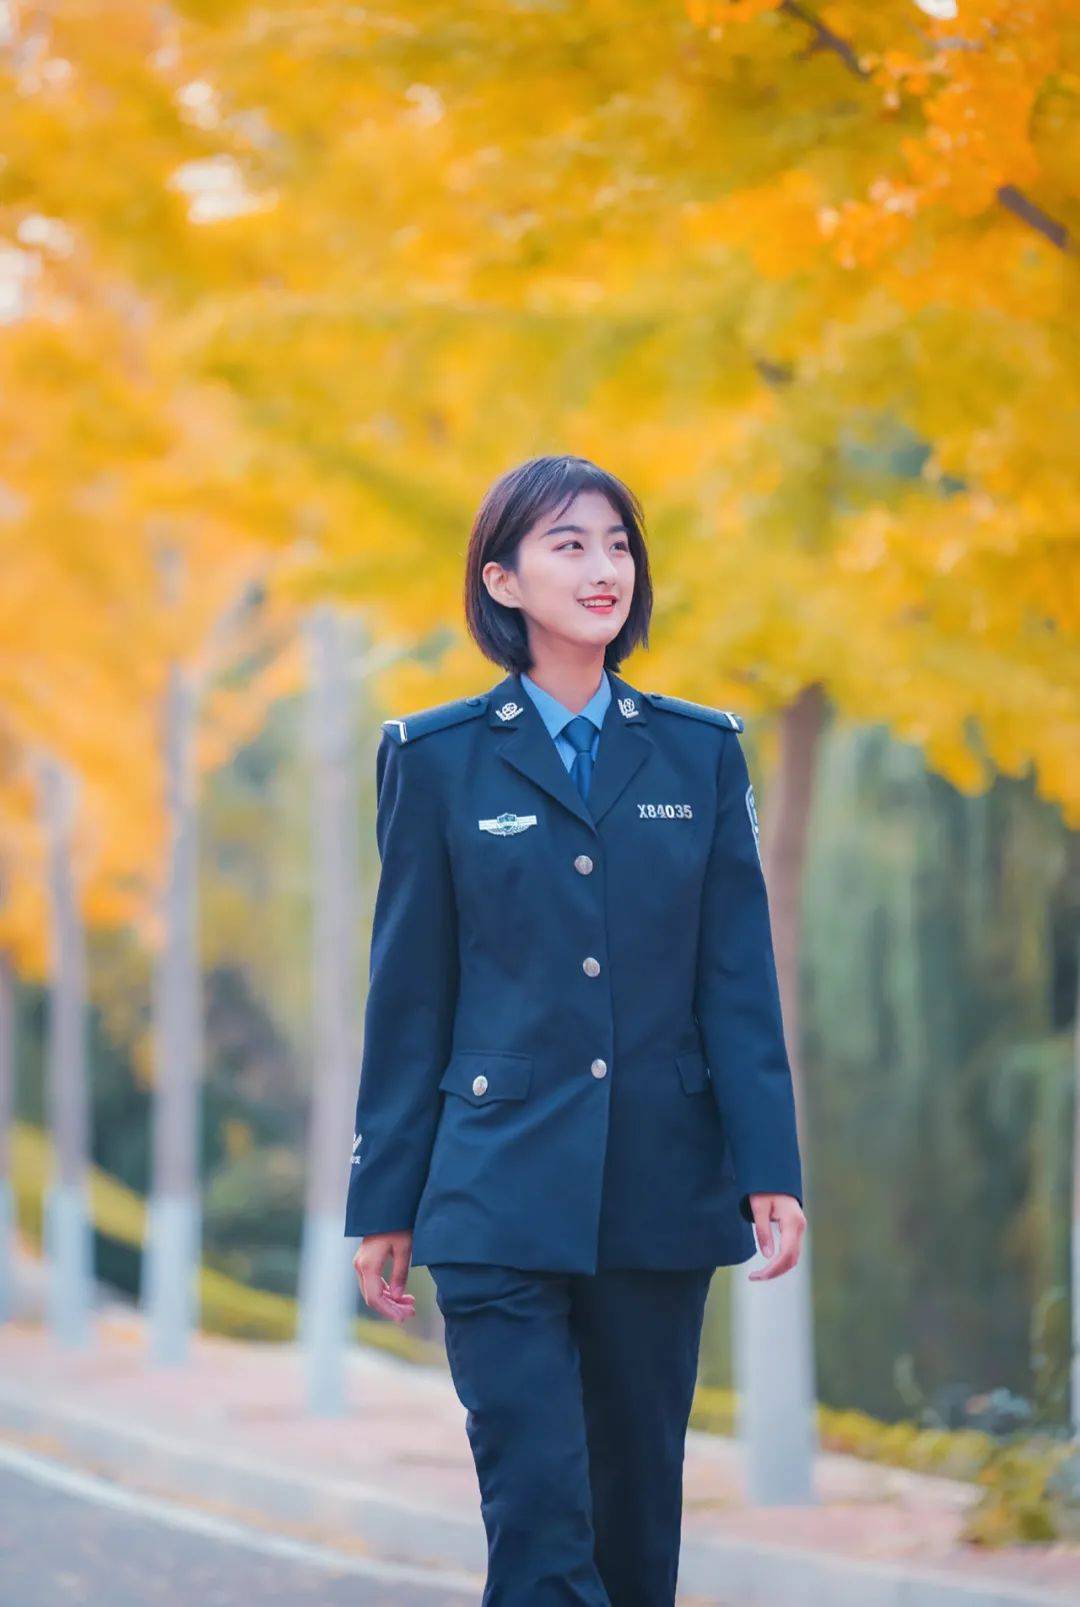  本期我们认识几位非常非常优秀的警校女生,均来自于辽宁警察学院